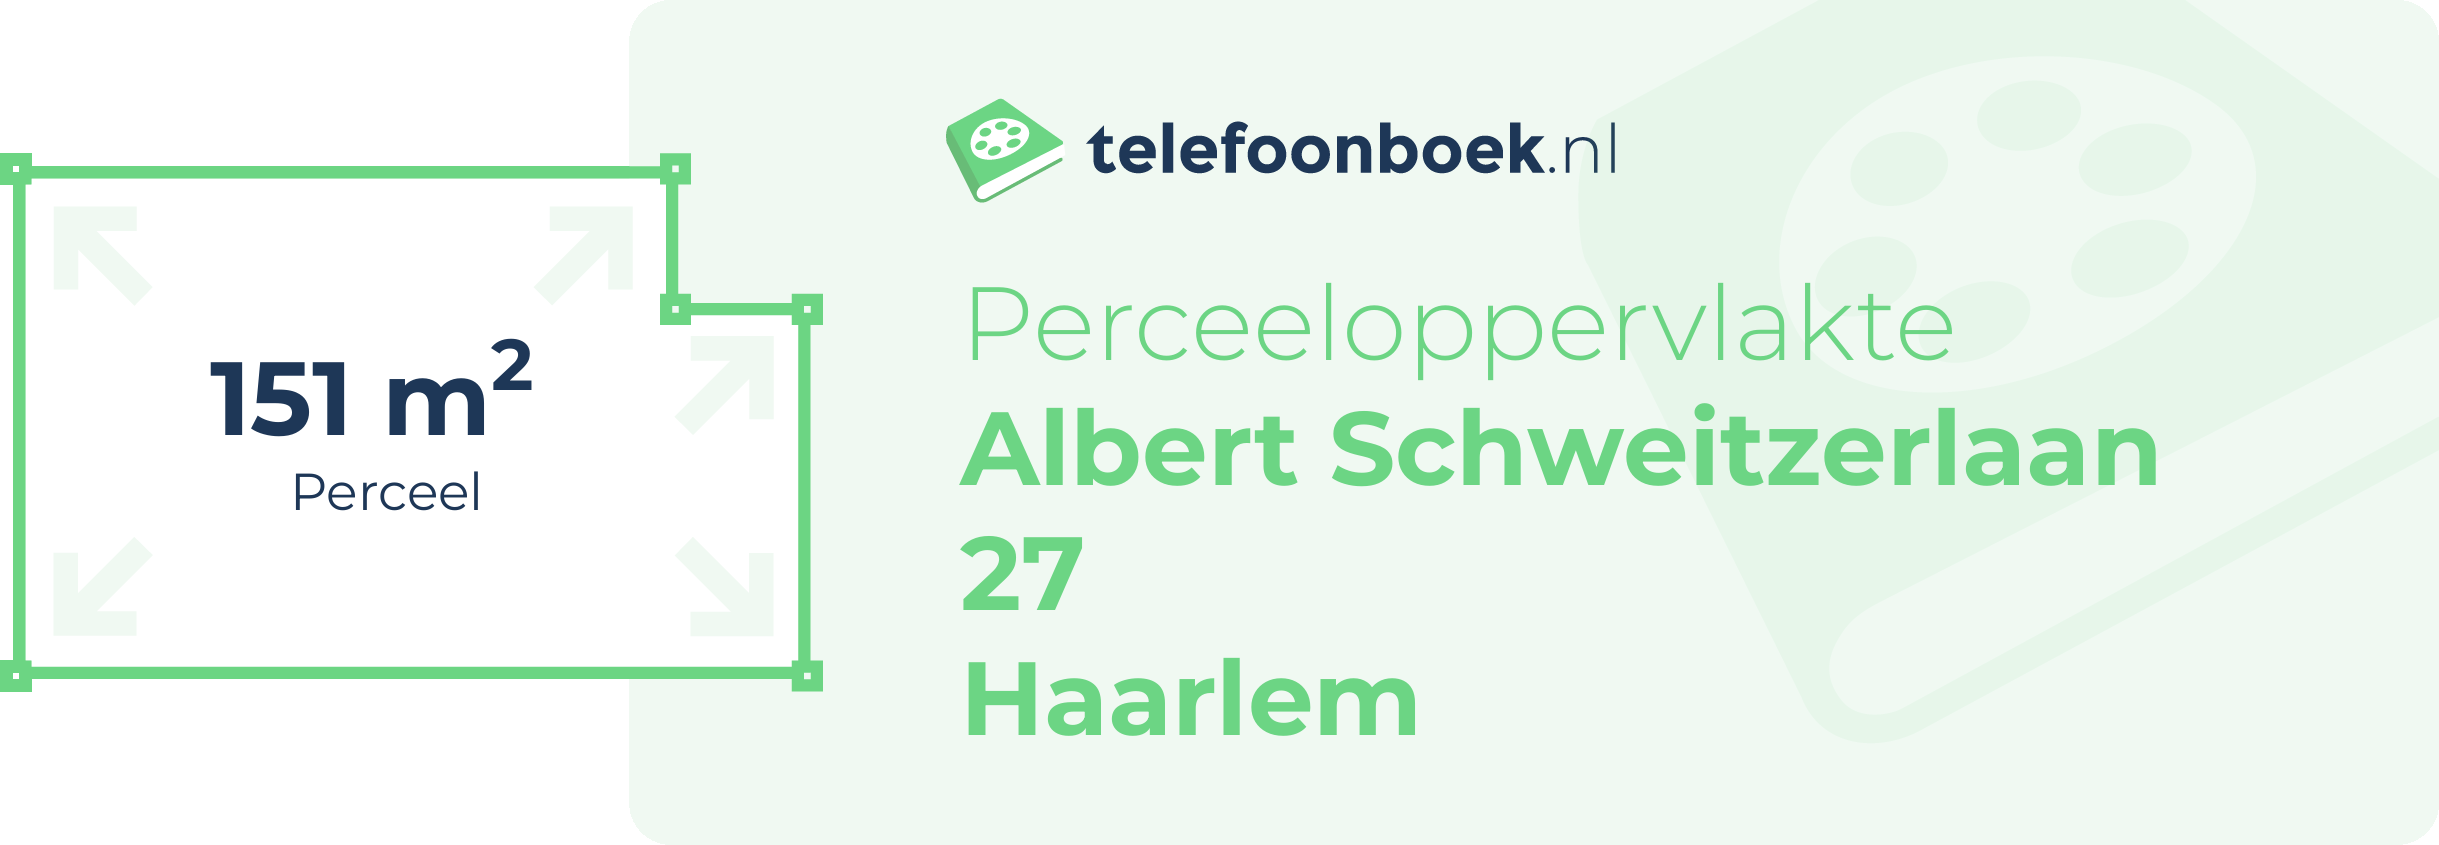 Perceeloppervlakte Albert Schweitzerlaan 27 Haarlem